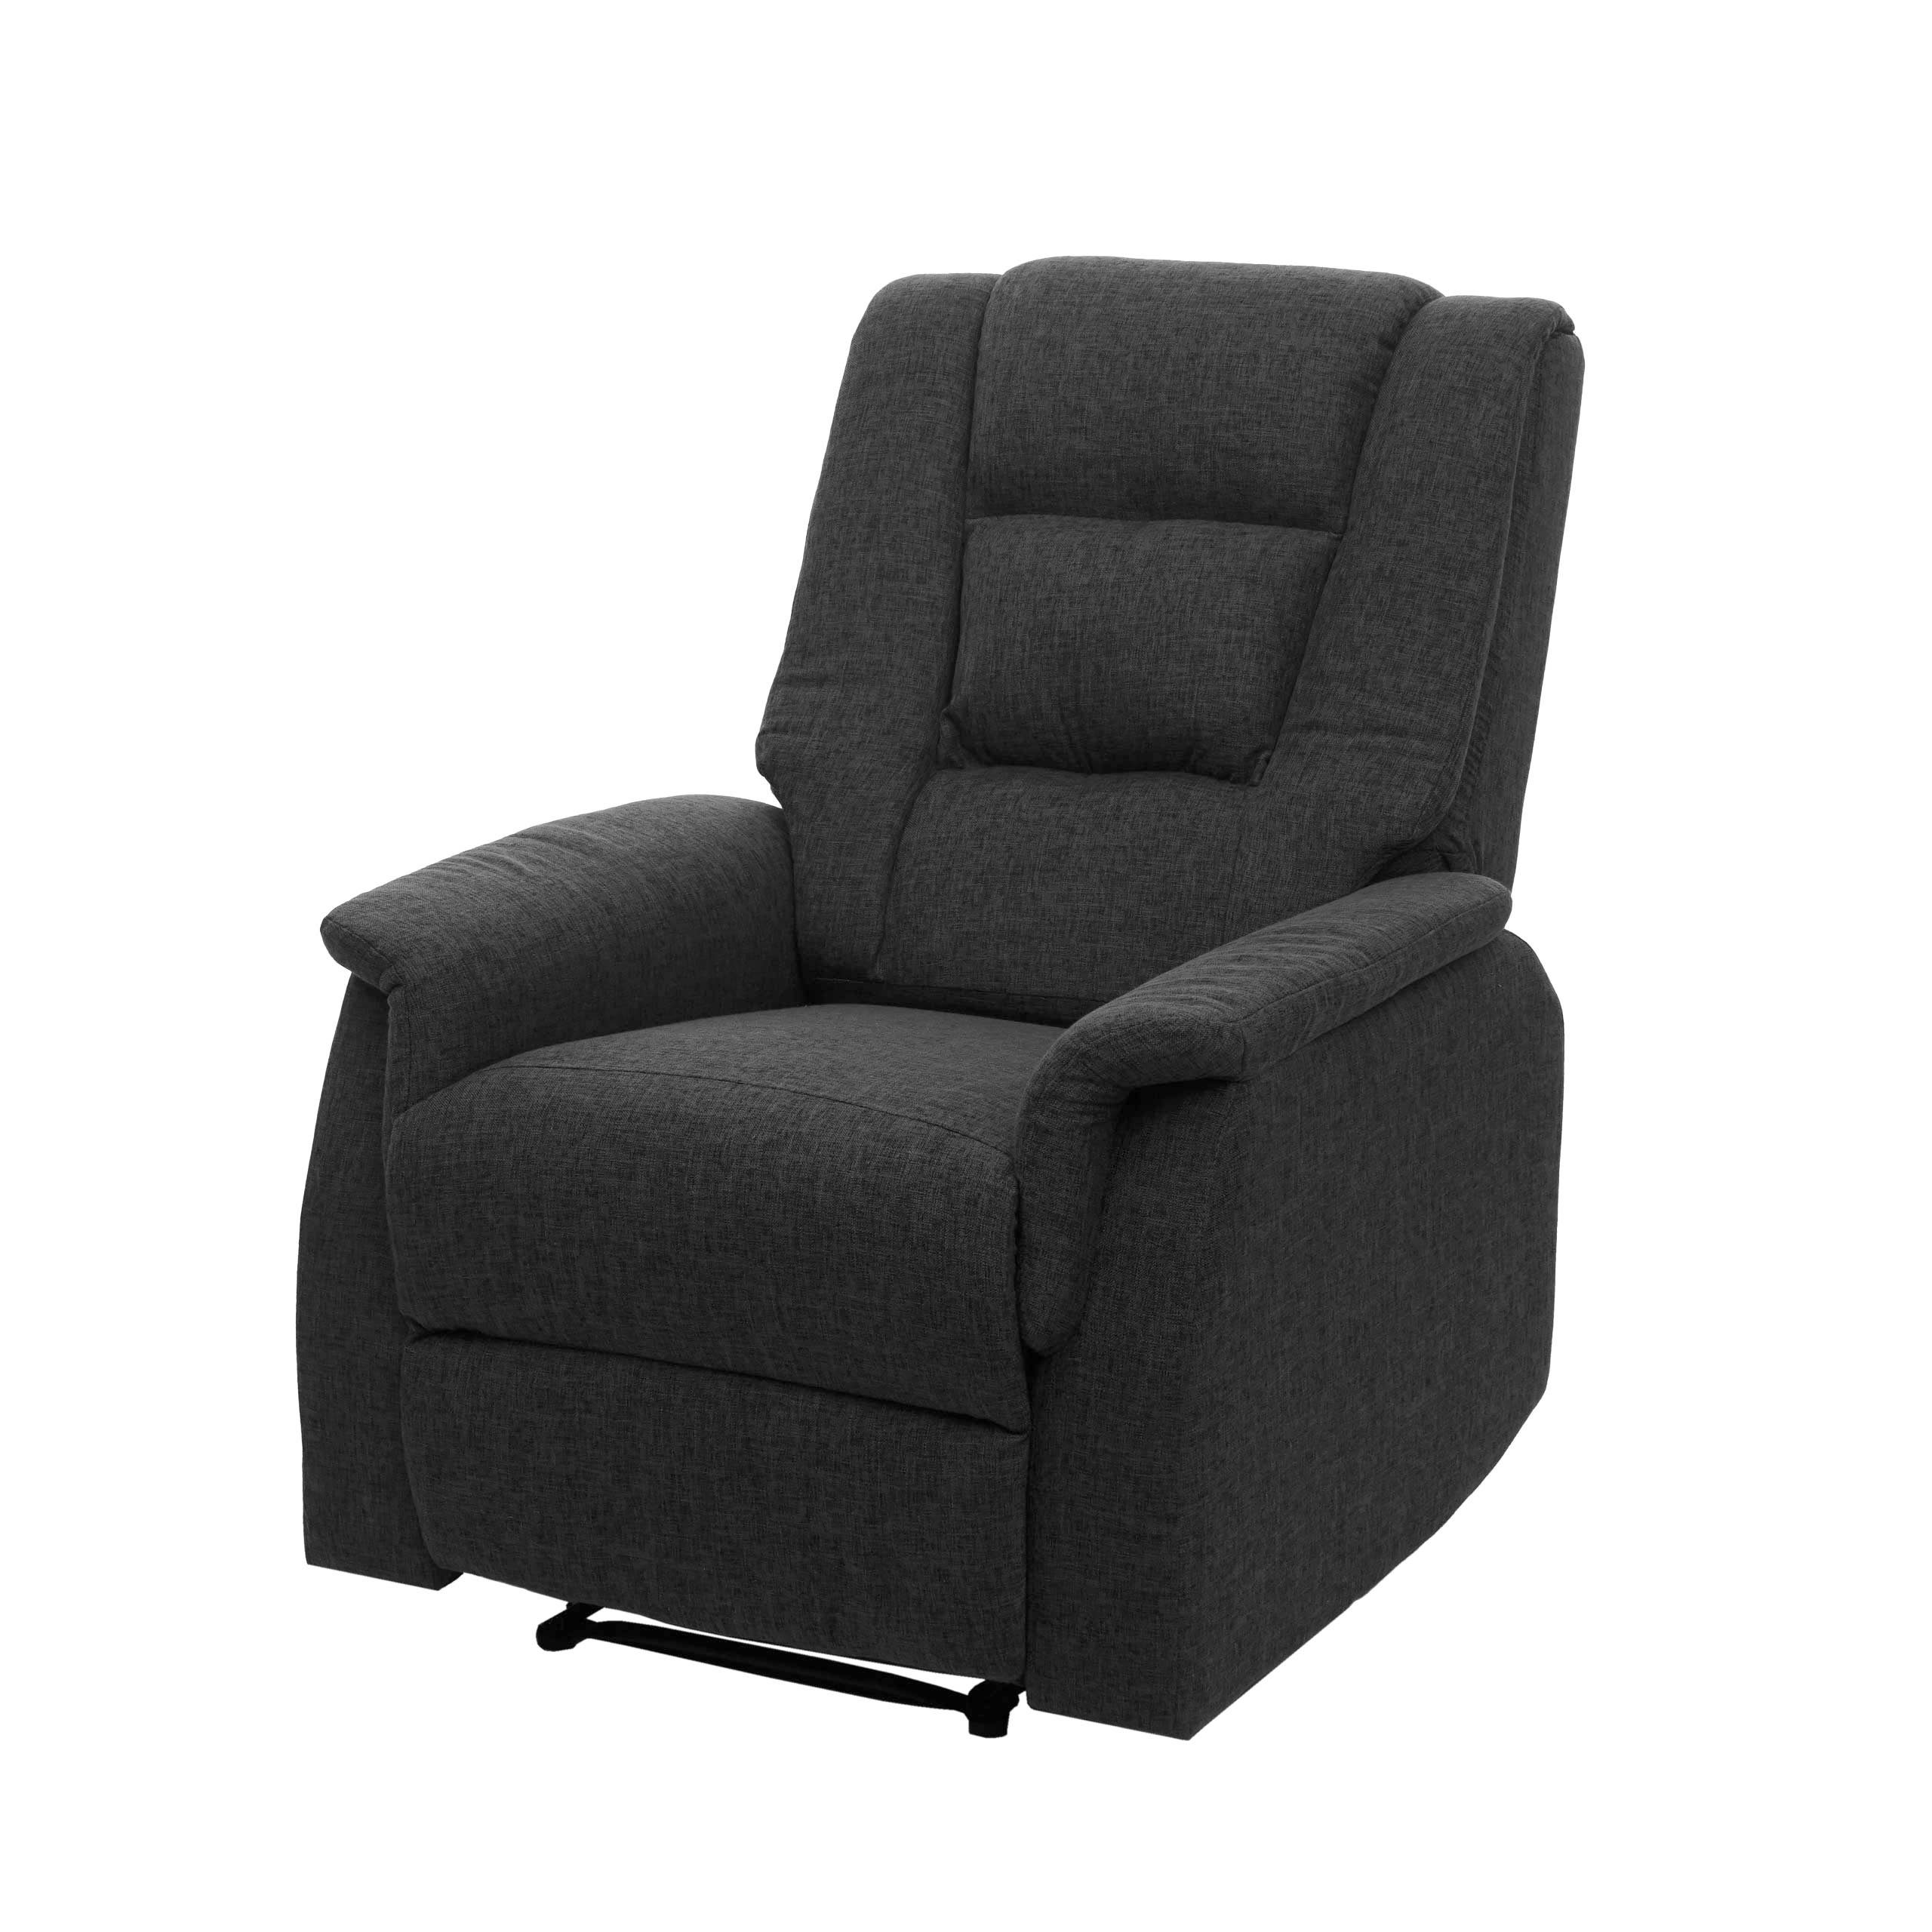 MCW TV-Sessel MCW-F23, 2 Intensitätsstufen inkl. Heizung zur Entspannung, 5 Massagefunktionen, Besonders groß, Fußstütze durch Lösen des Hebels verstellbar